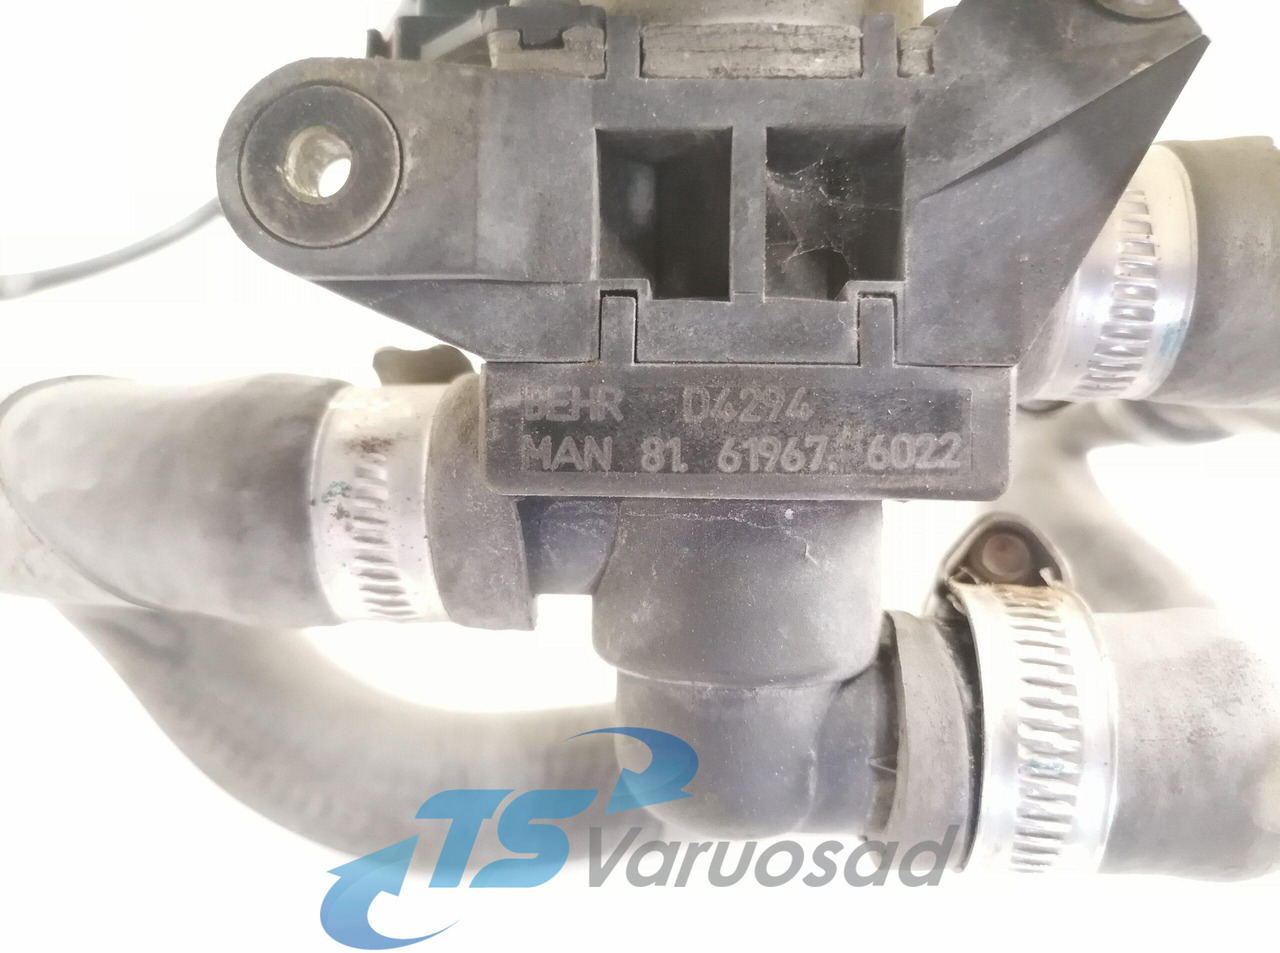 Cấp nhiệt/ Thông gió cho Xe tải MAN Water valve 81619676022: hình 2